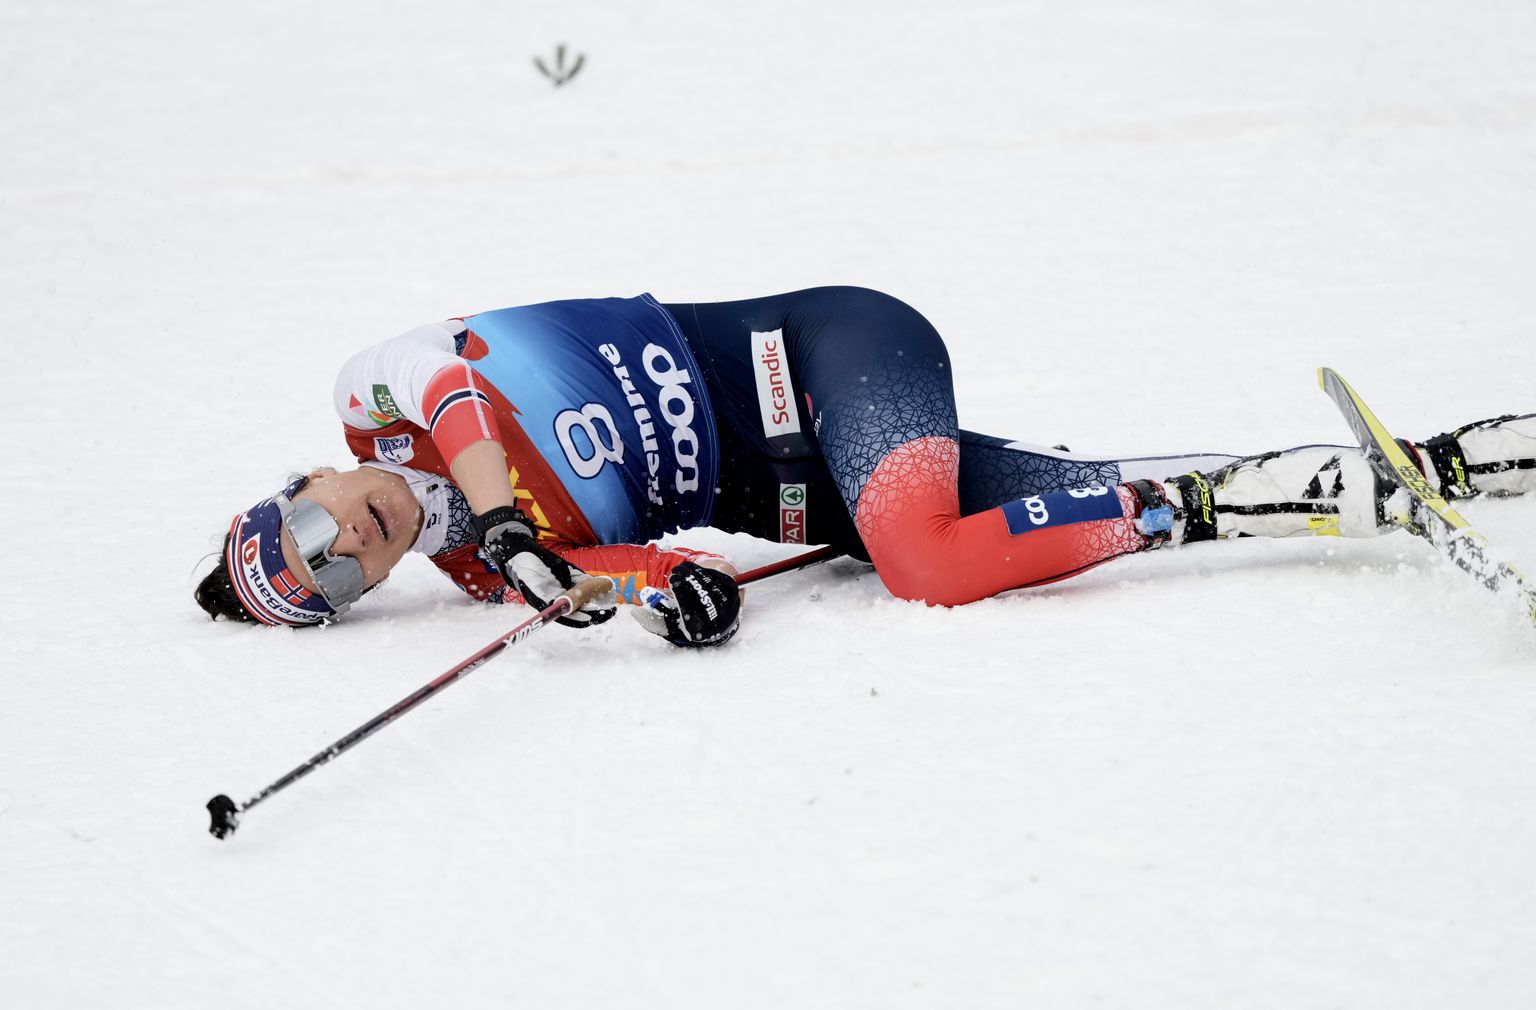 Heidi Weng suutis 2022. aastal Tour de Ski viimase etapi võita, tänavu tuli norralannal elppida teise kohaga.